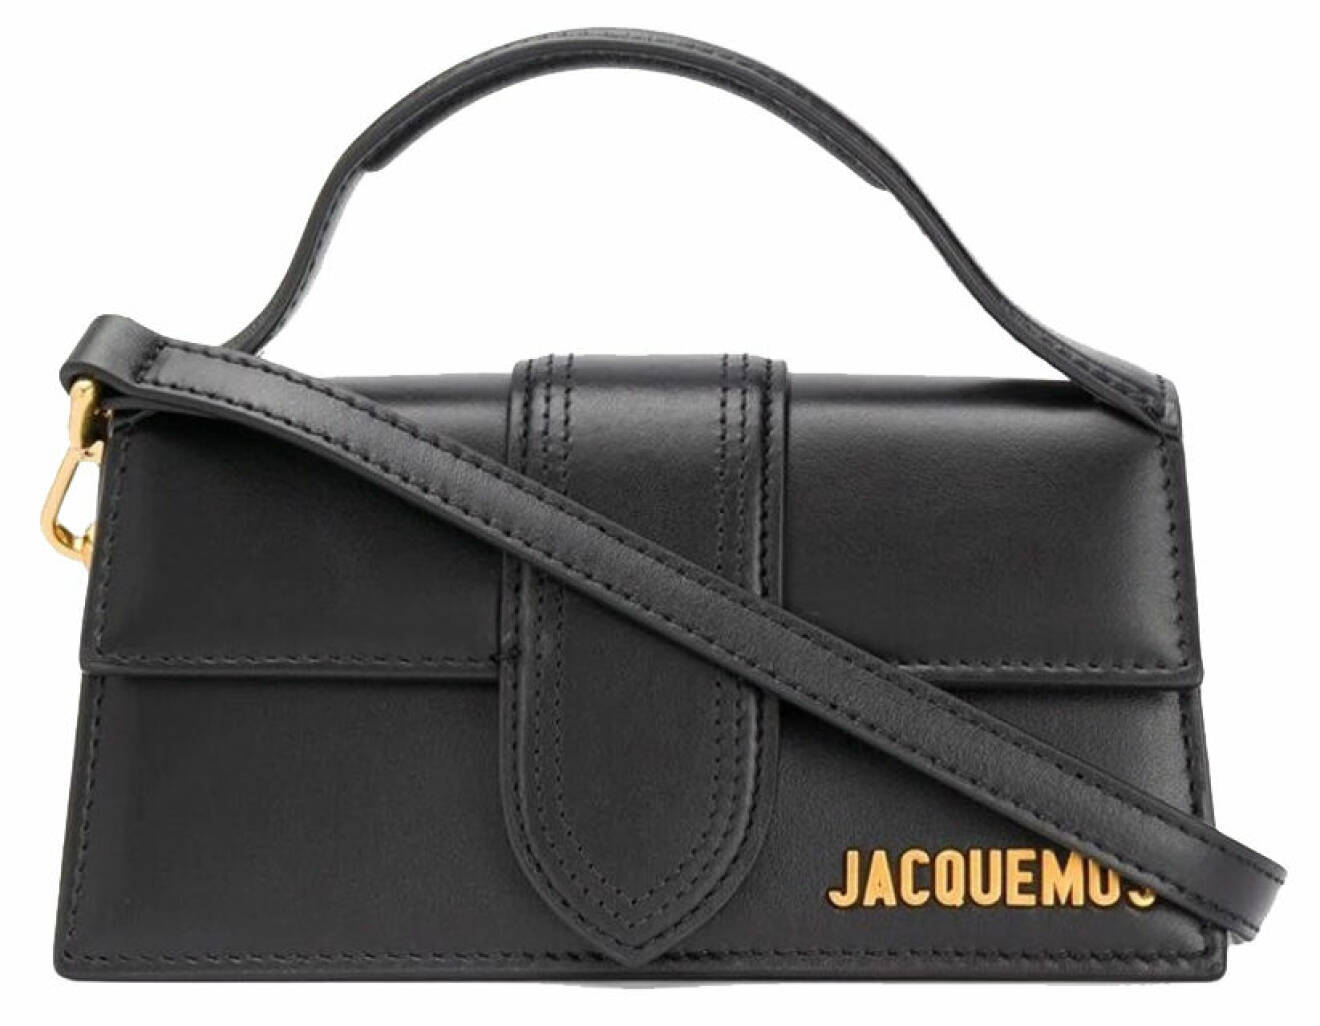 Väska från Jacquemus.